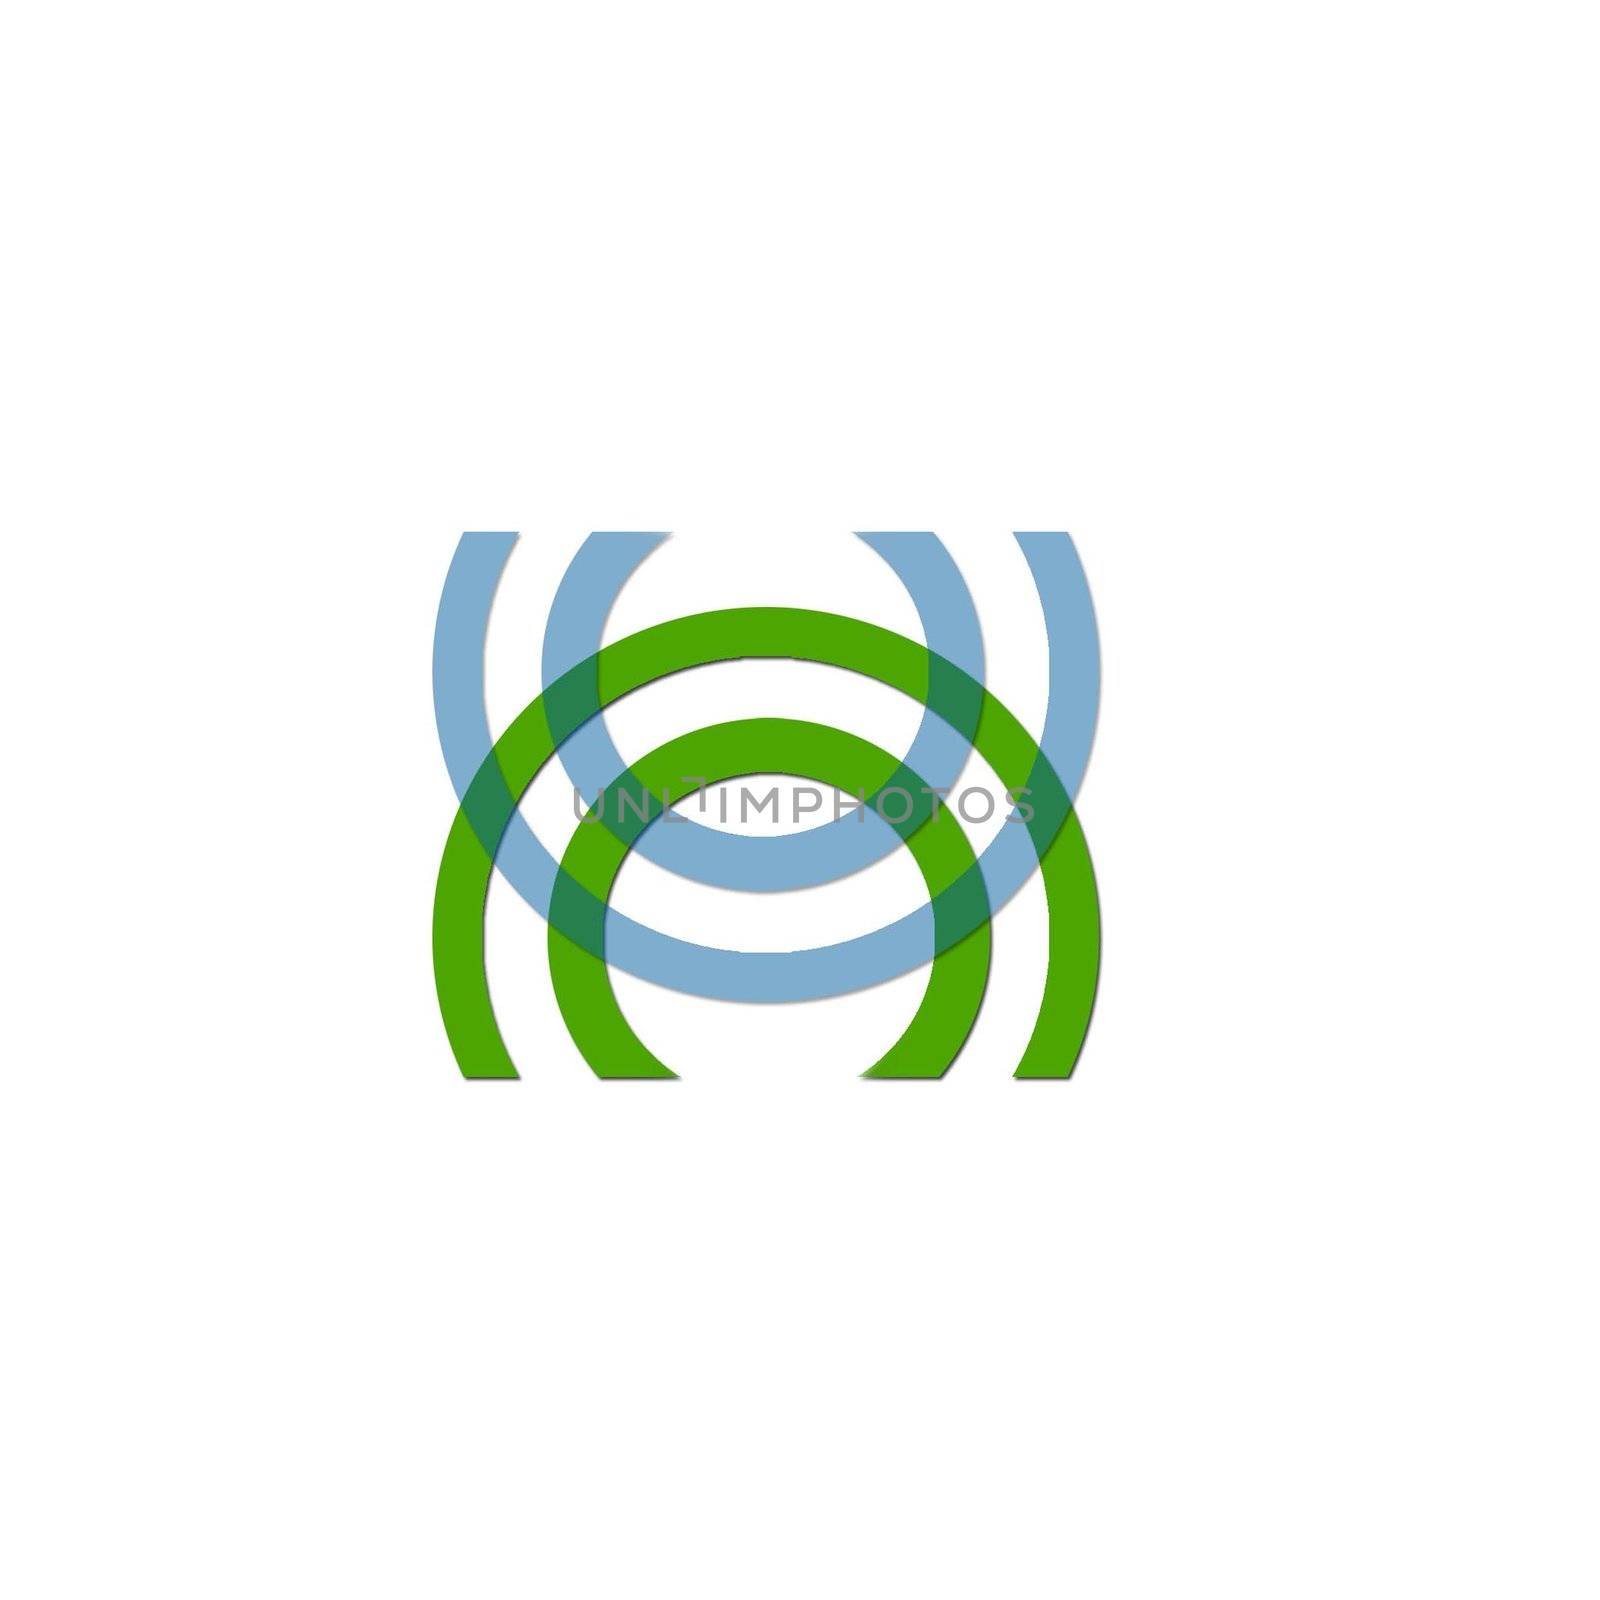 ripples logo by shawlinmohd